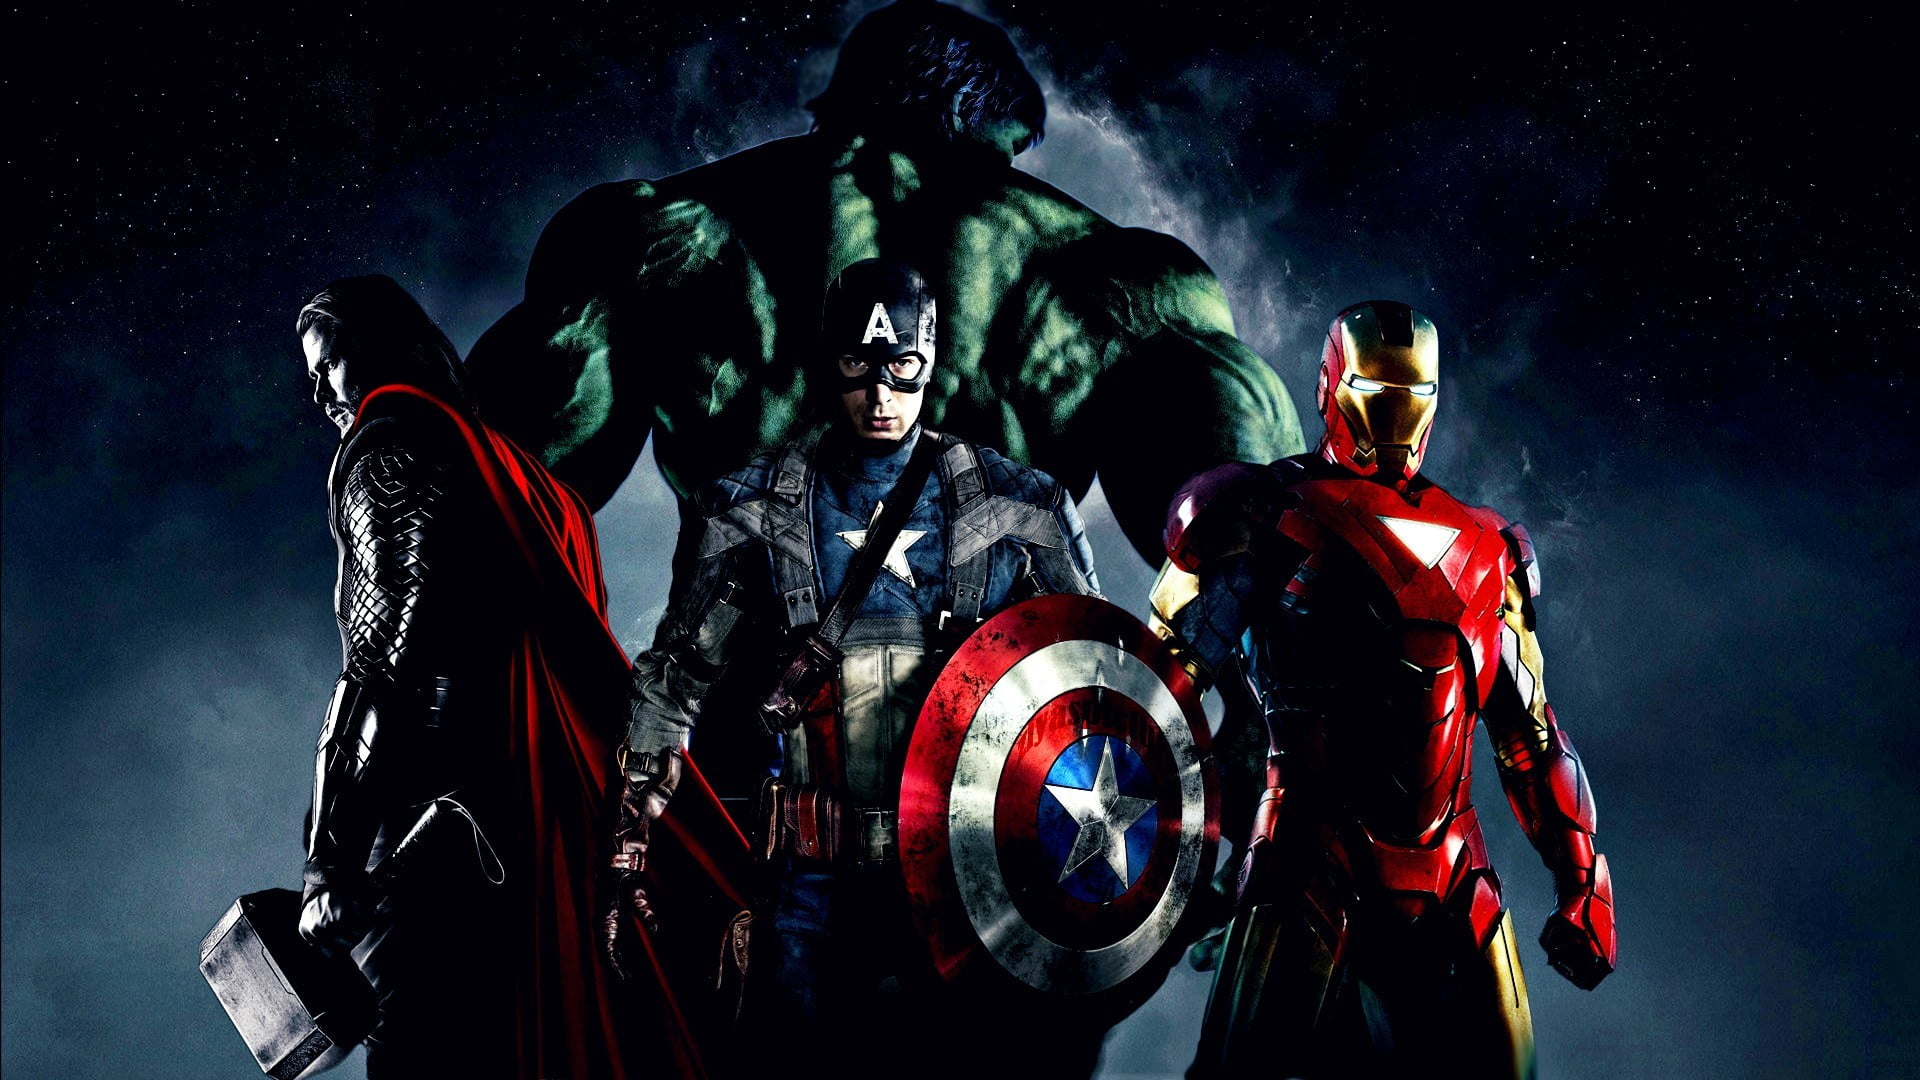 Marvel Avengers digital wallpaper, The Avengers, Iron Man, Thor